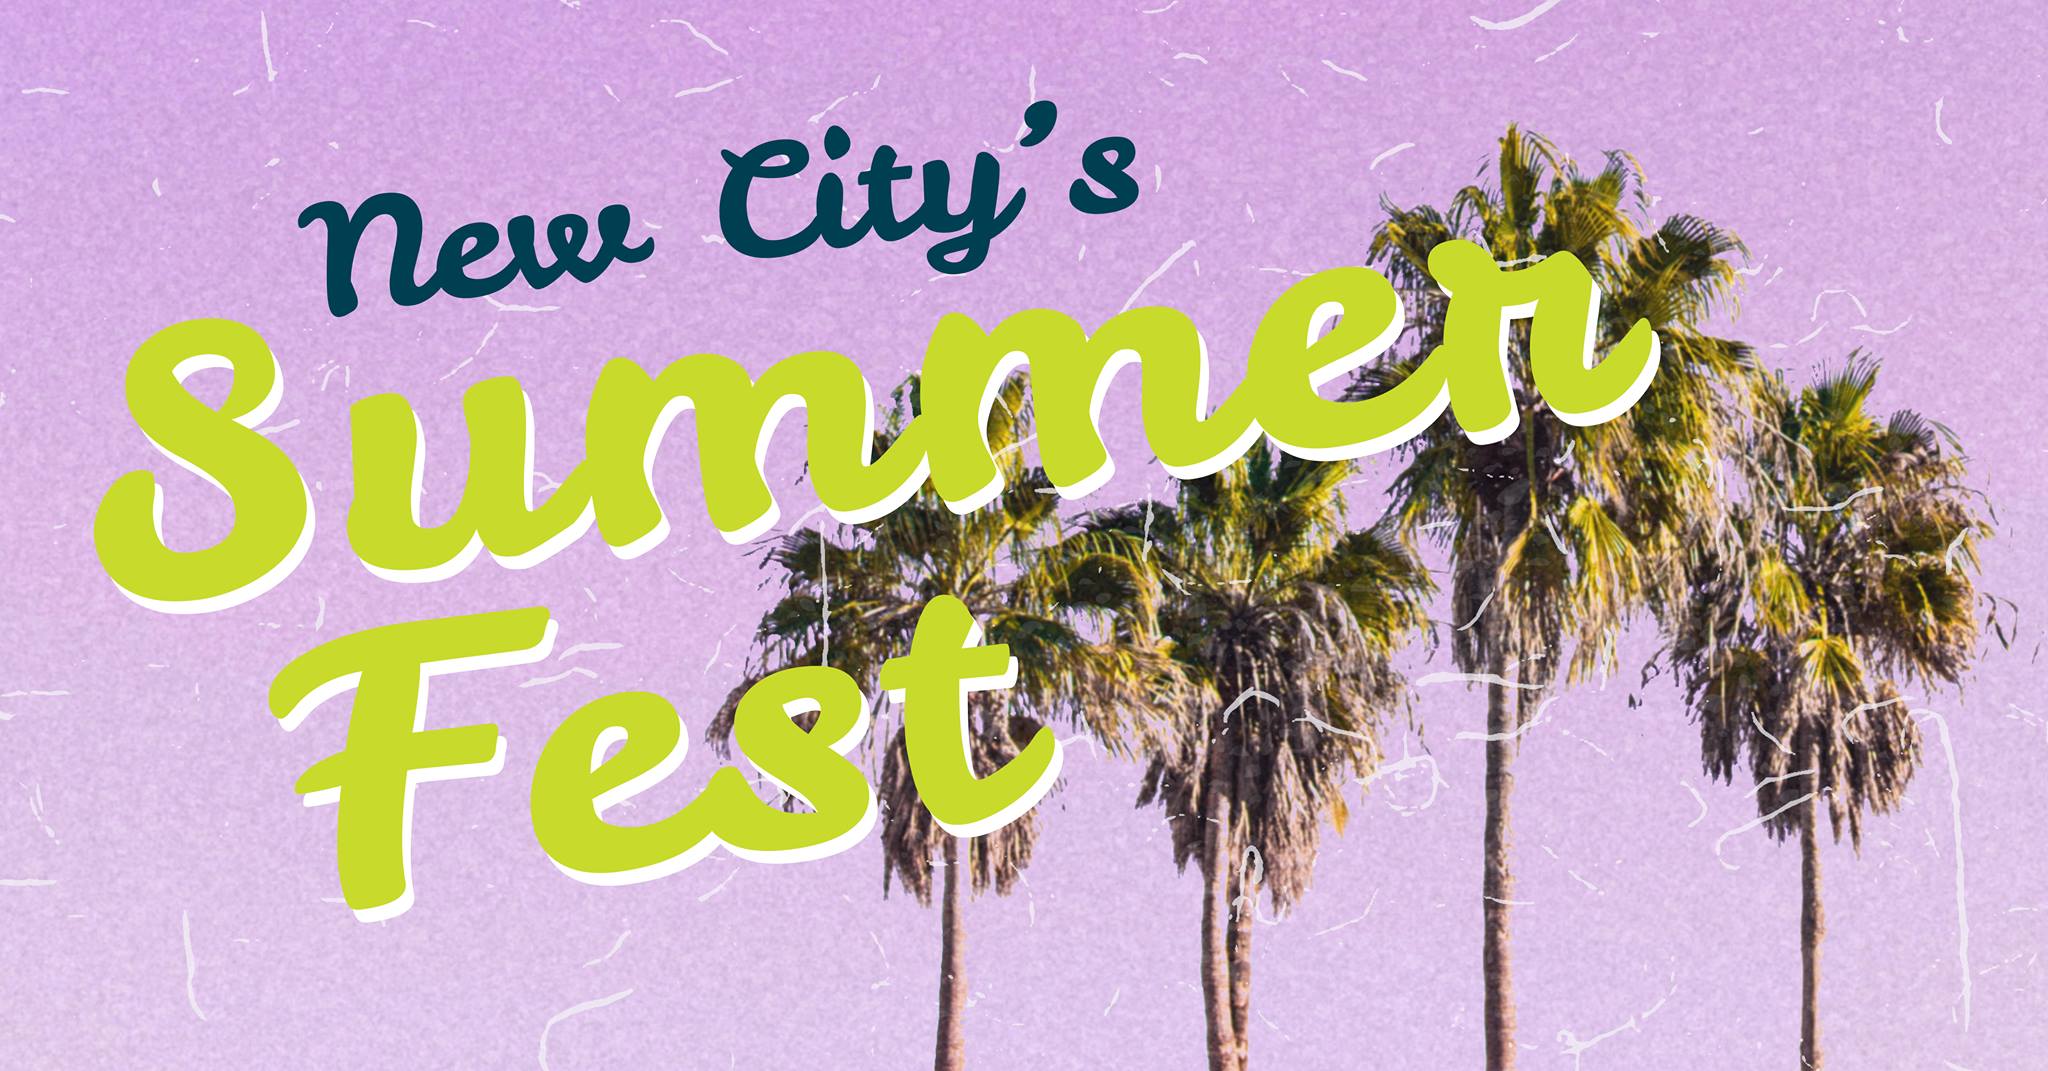 New City's Summer Fest